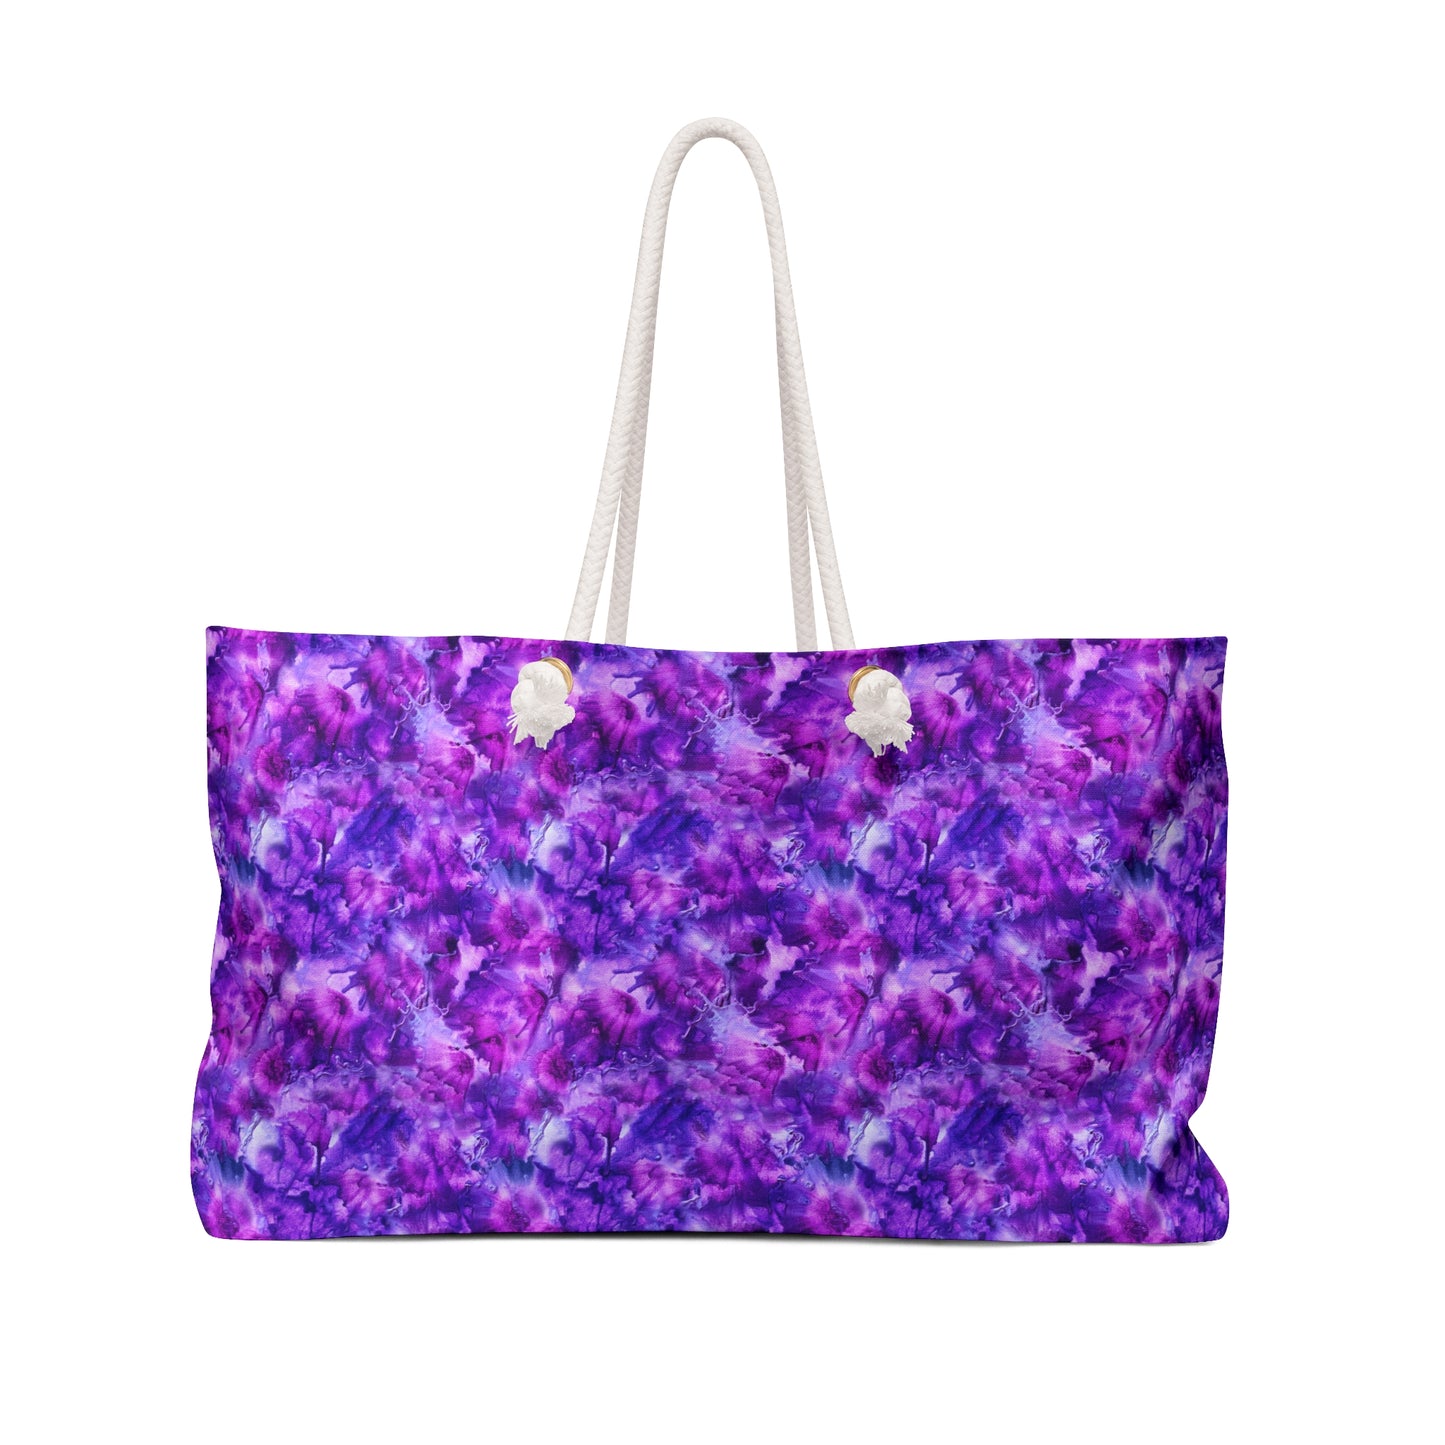 Amethyst Dreams Purple Weekender Bag